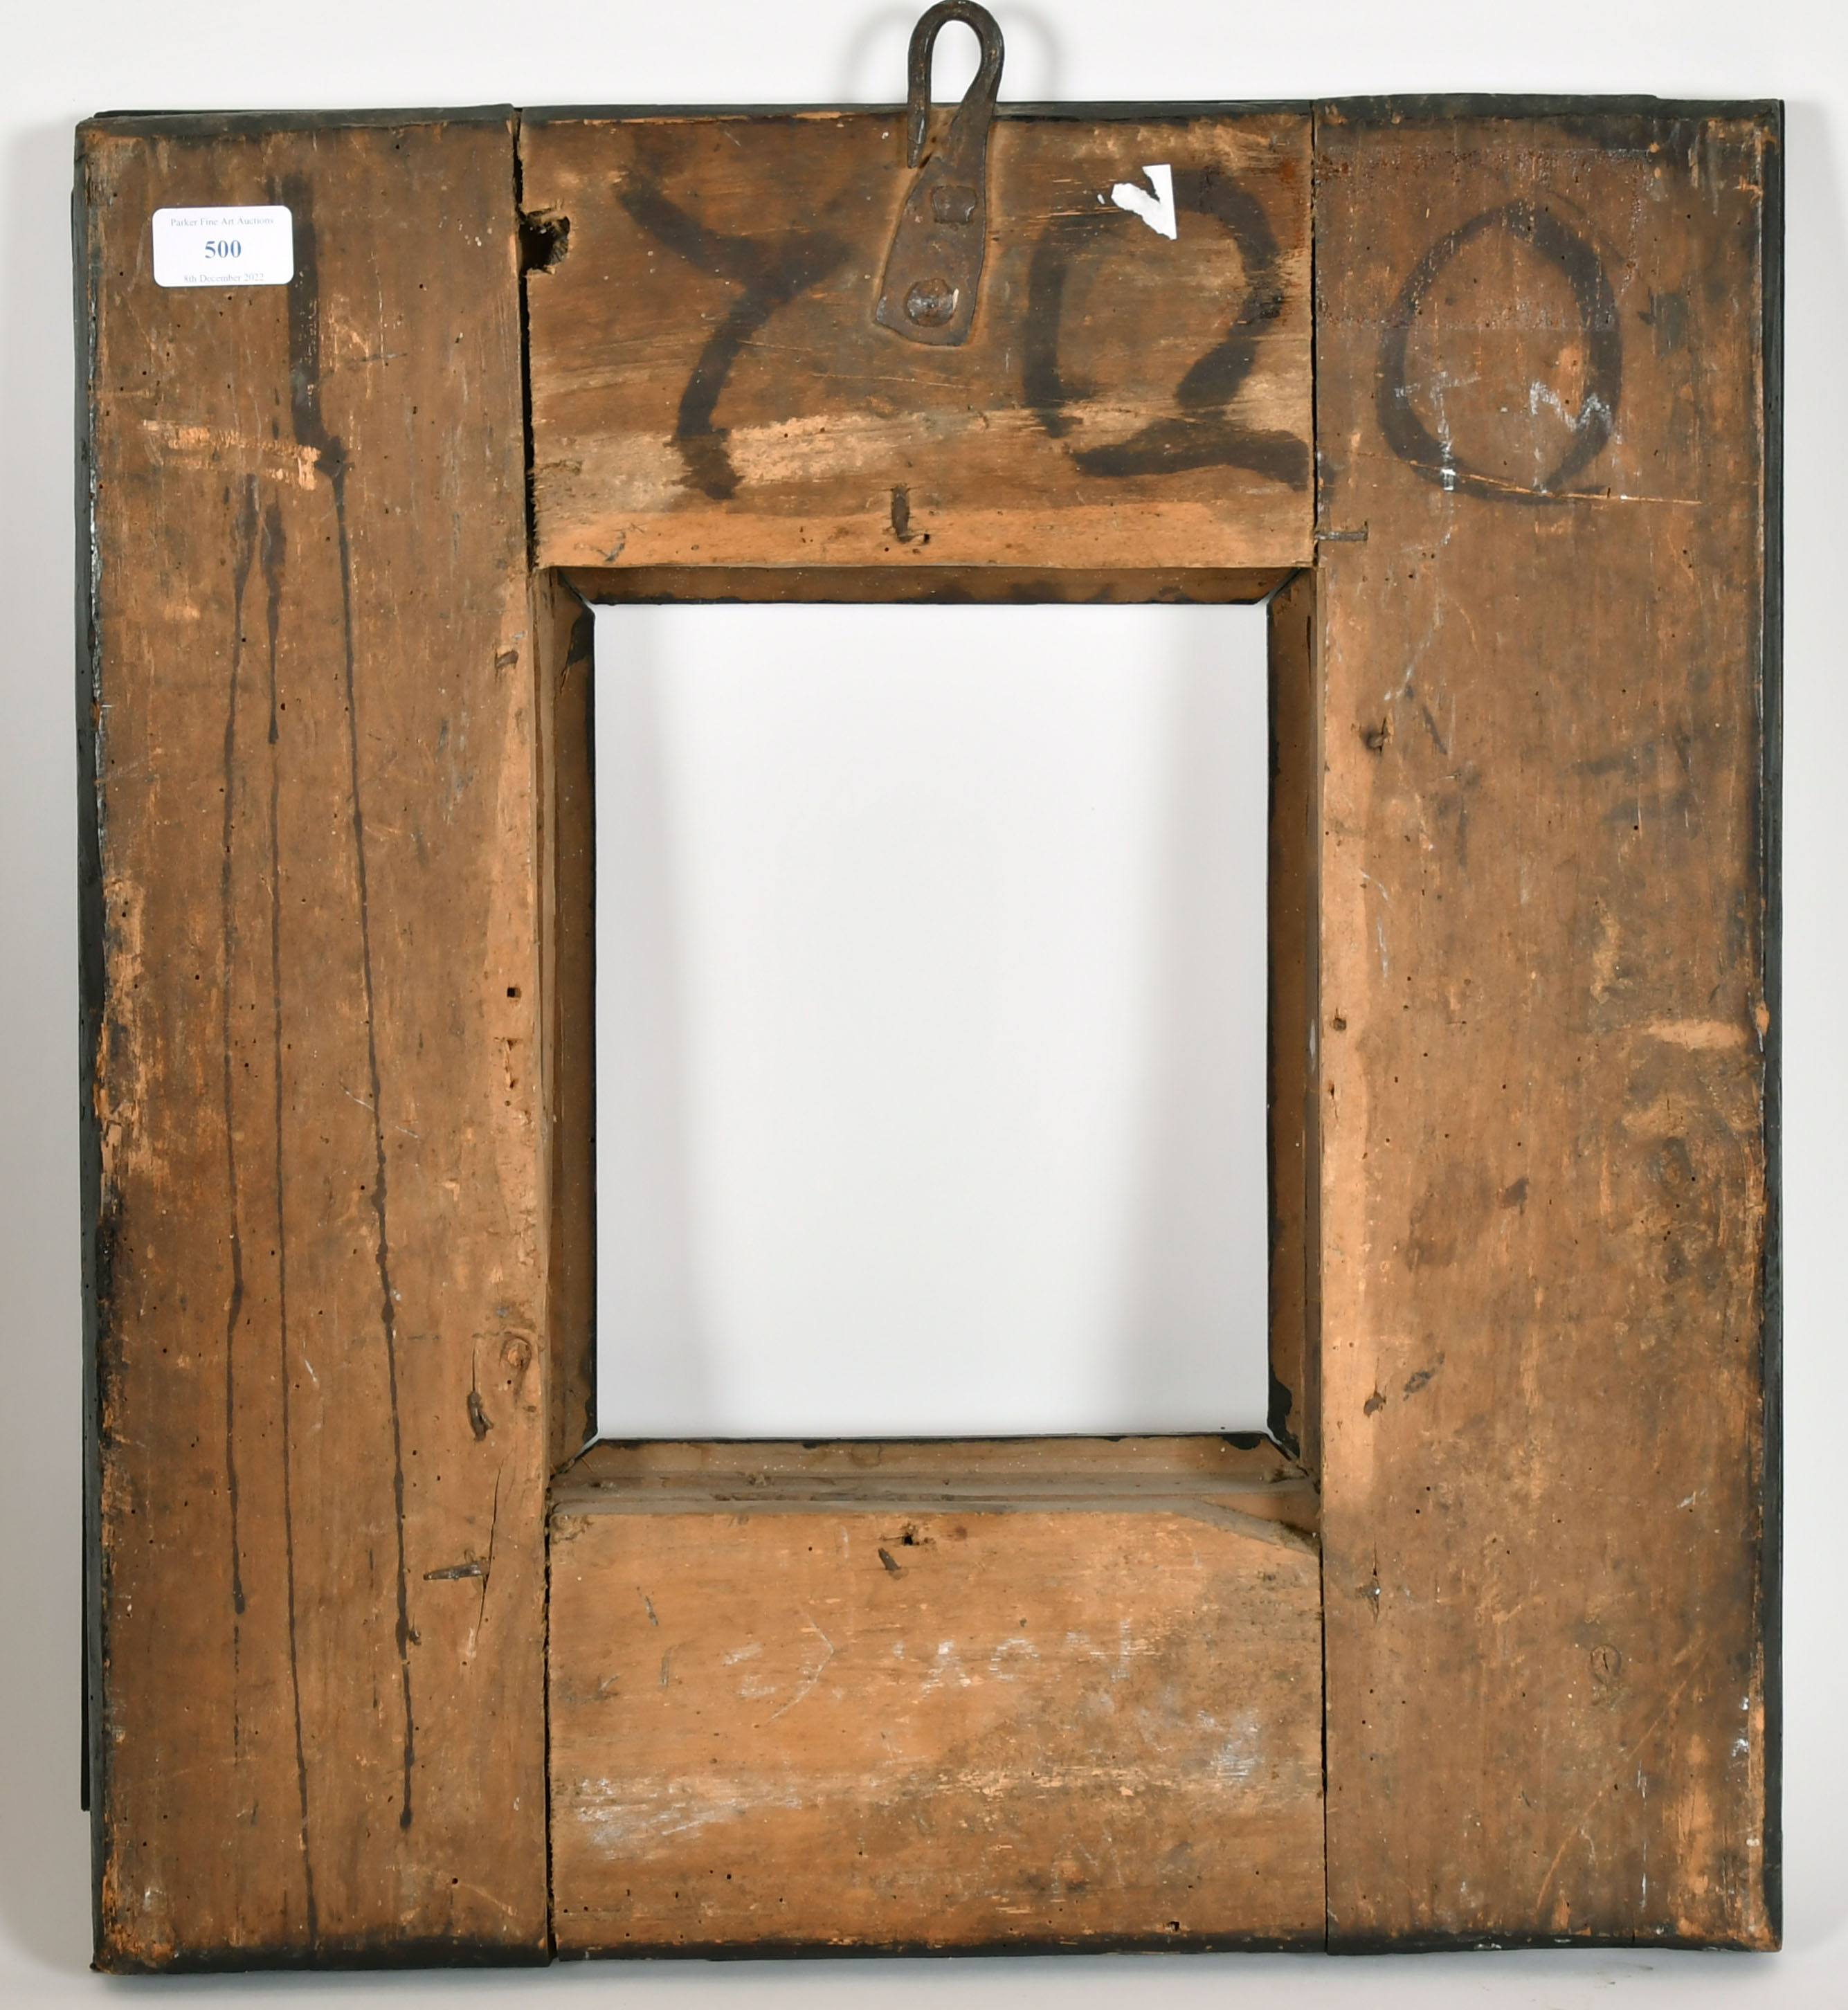 17th Century Dutch School. A Rippled Ebony Frame, rebate 10" x 8" (25.4 x 20.3cm) - Image 3 of 3